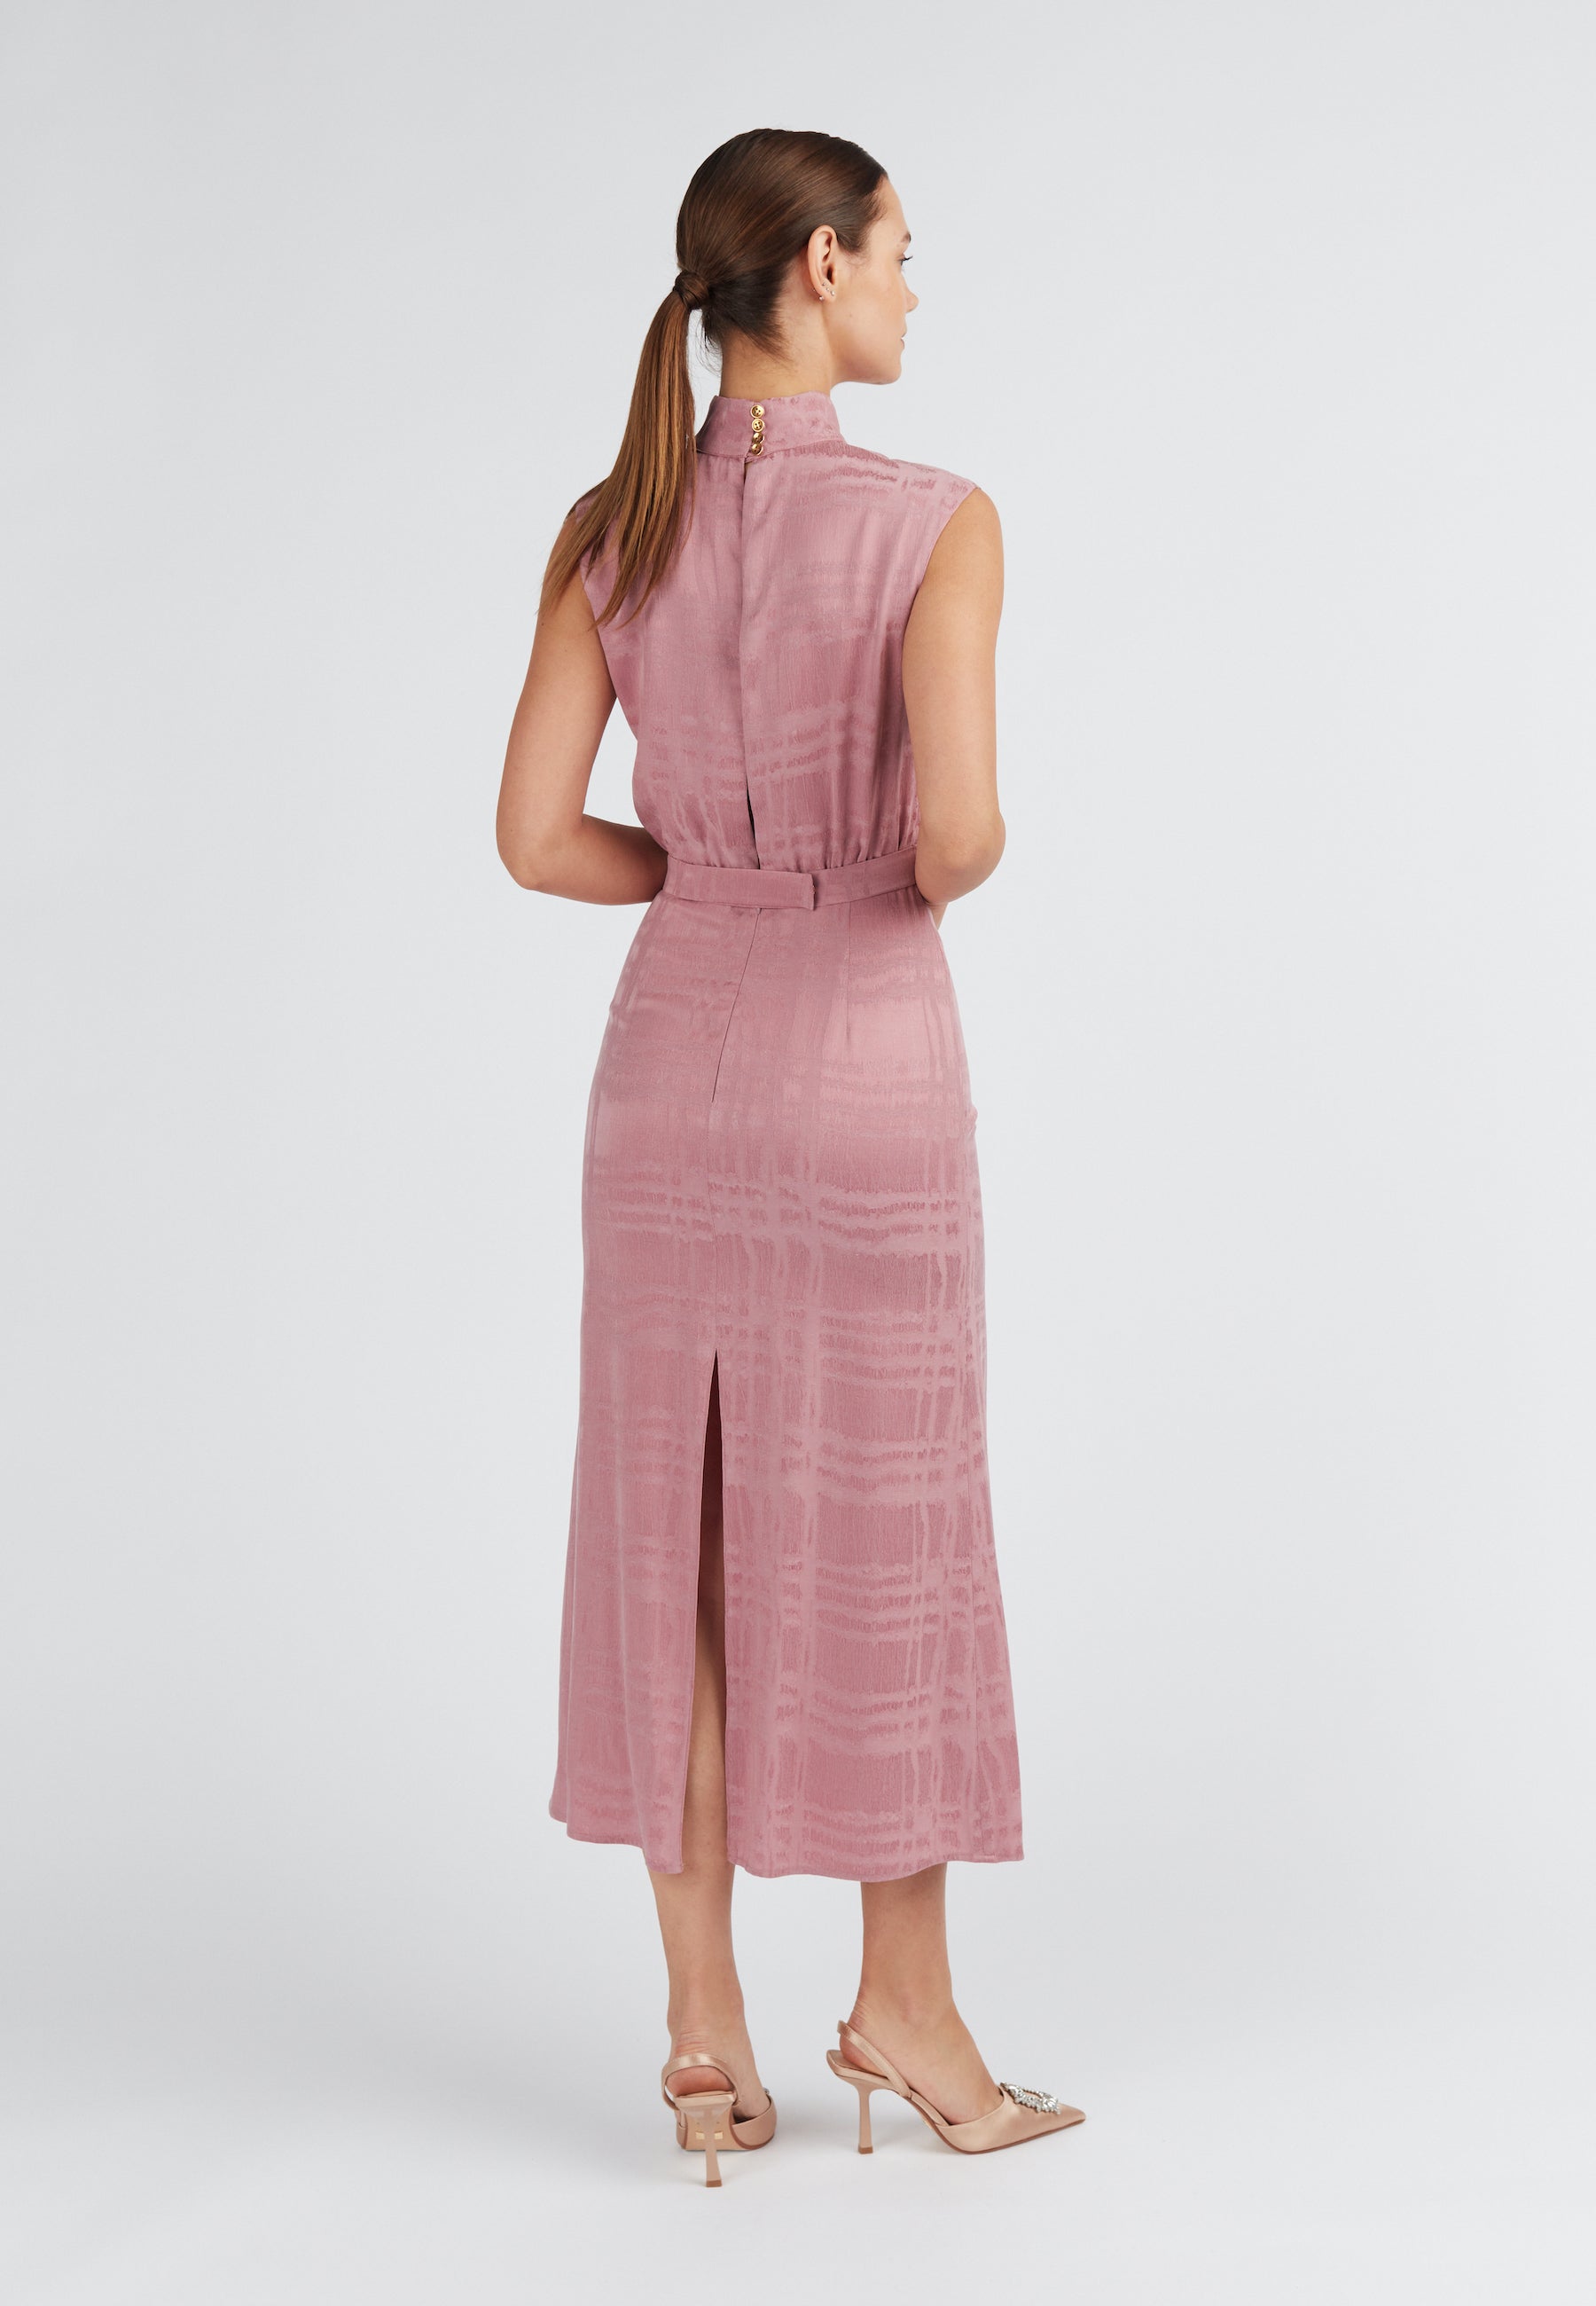 Lavender Pink Turtleneck Midi Dress with back slit